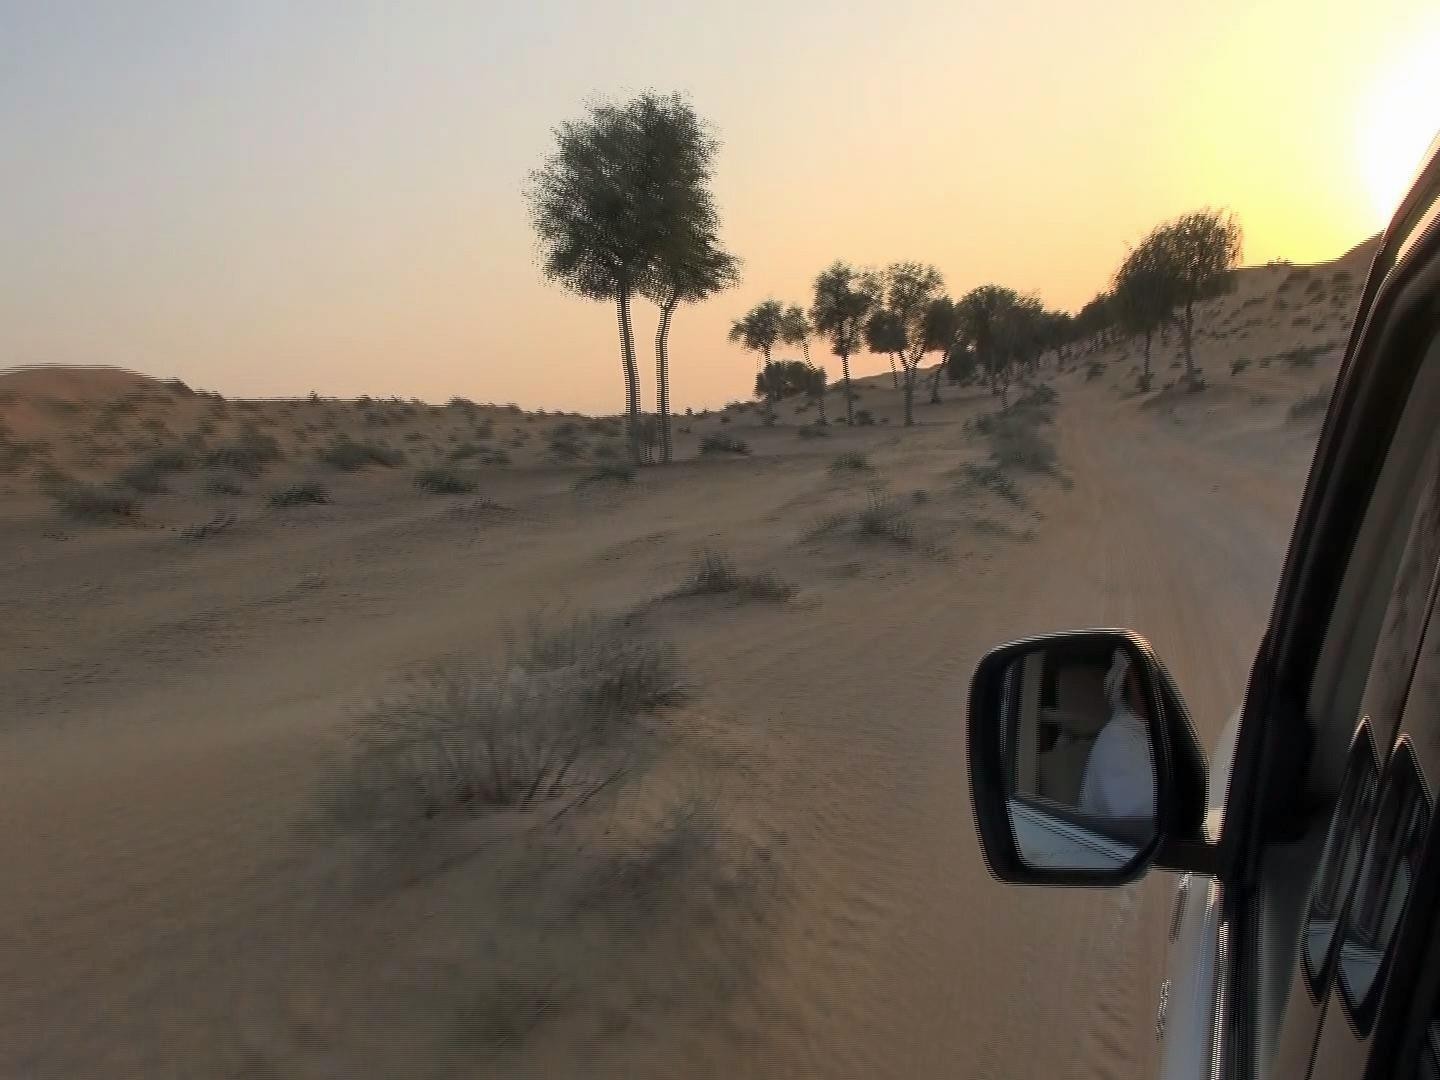 Dans le désert